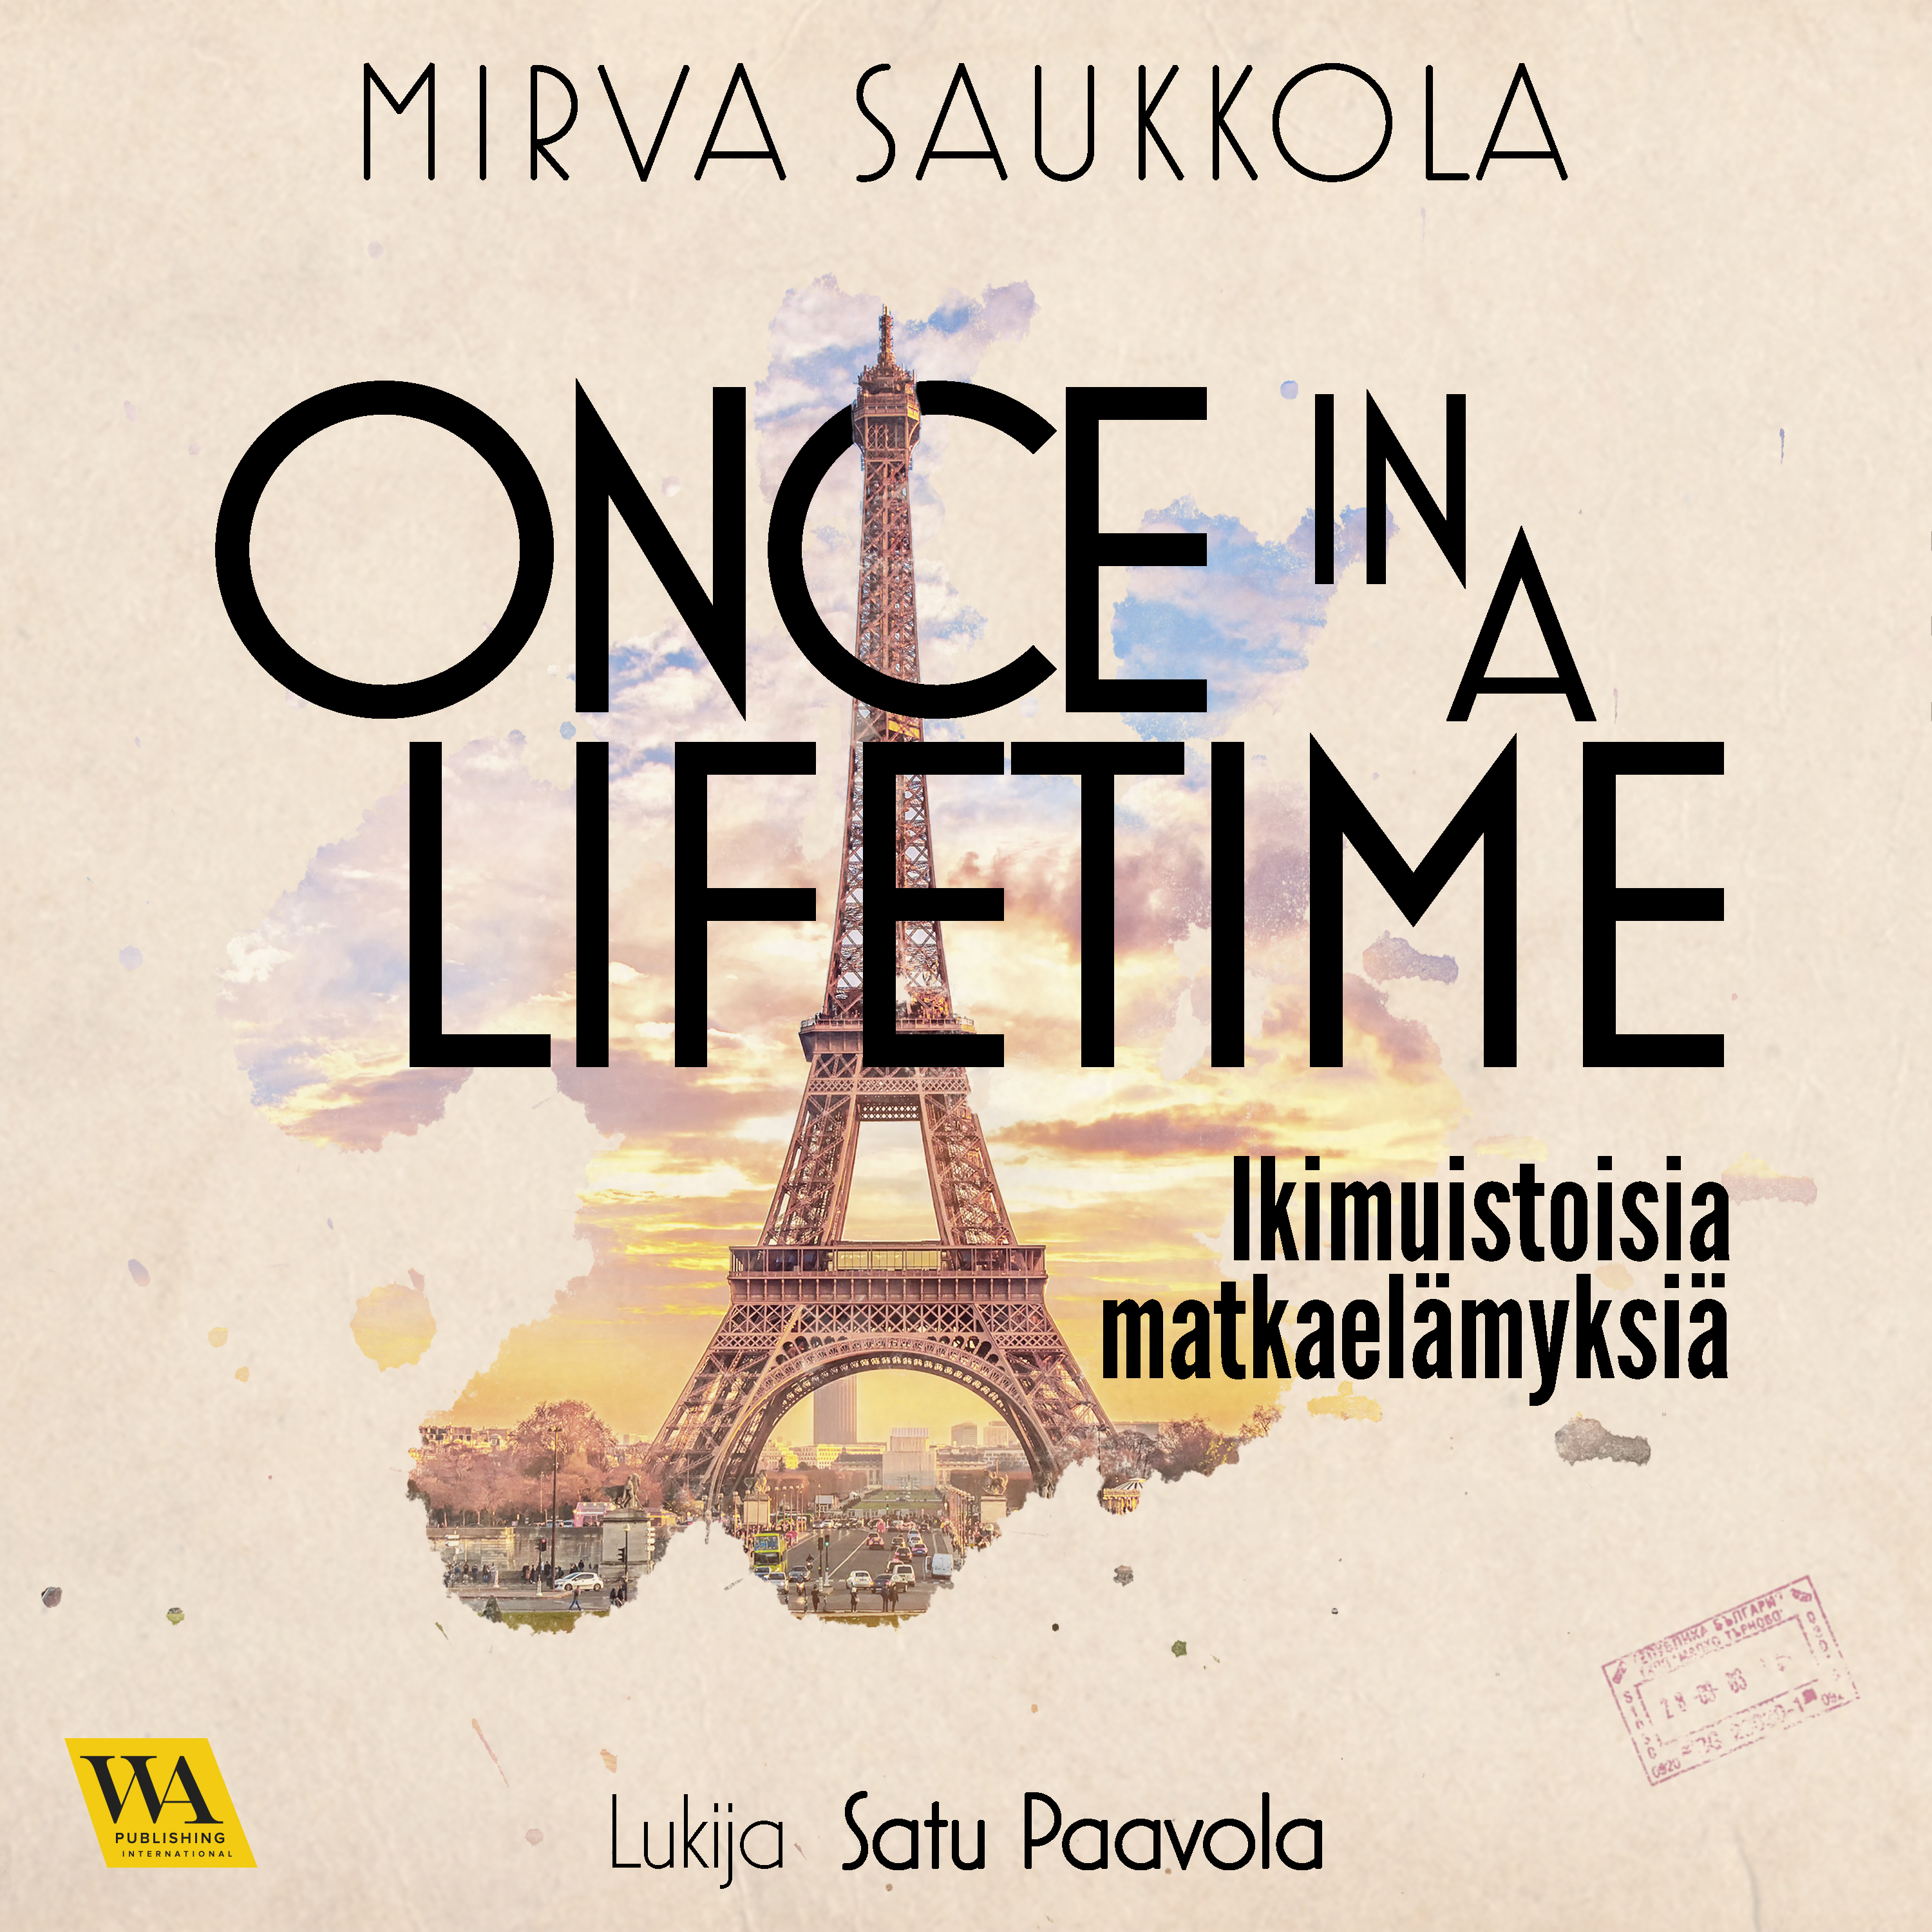 Saukkola, Mirva - Once in a lifetime: Ikimuistoisia matkaelämyksiä, äänikirja